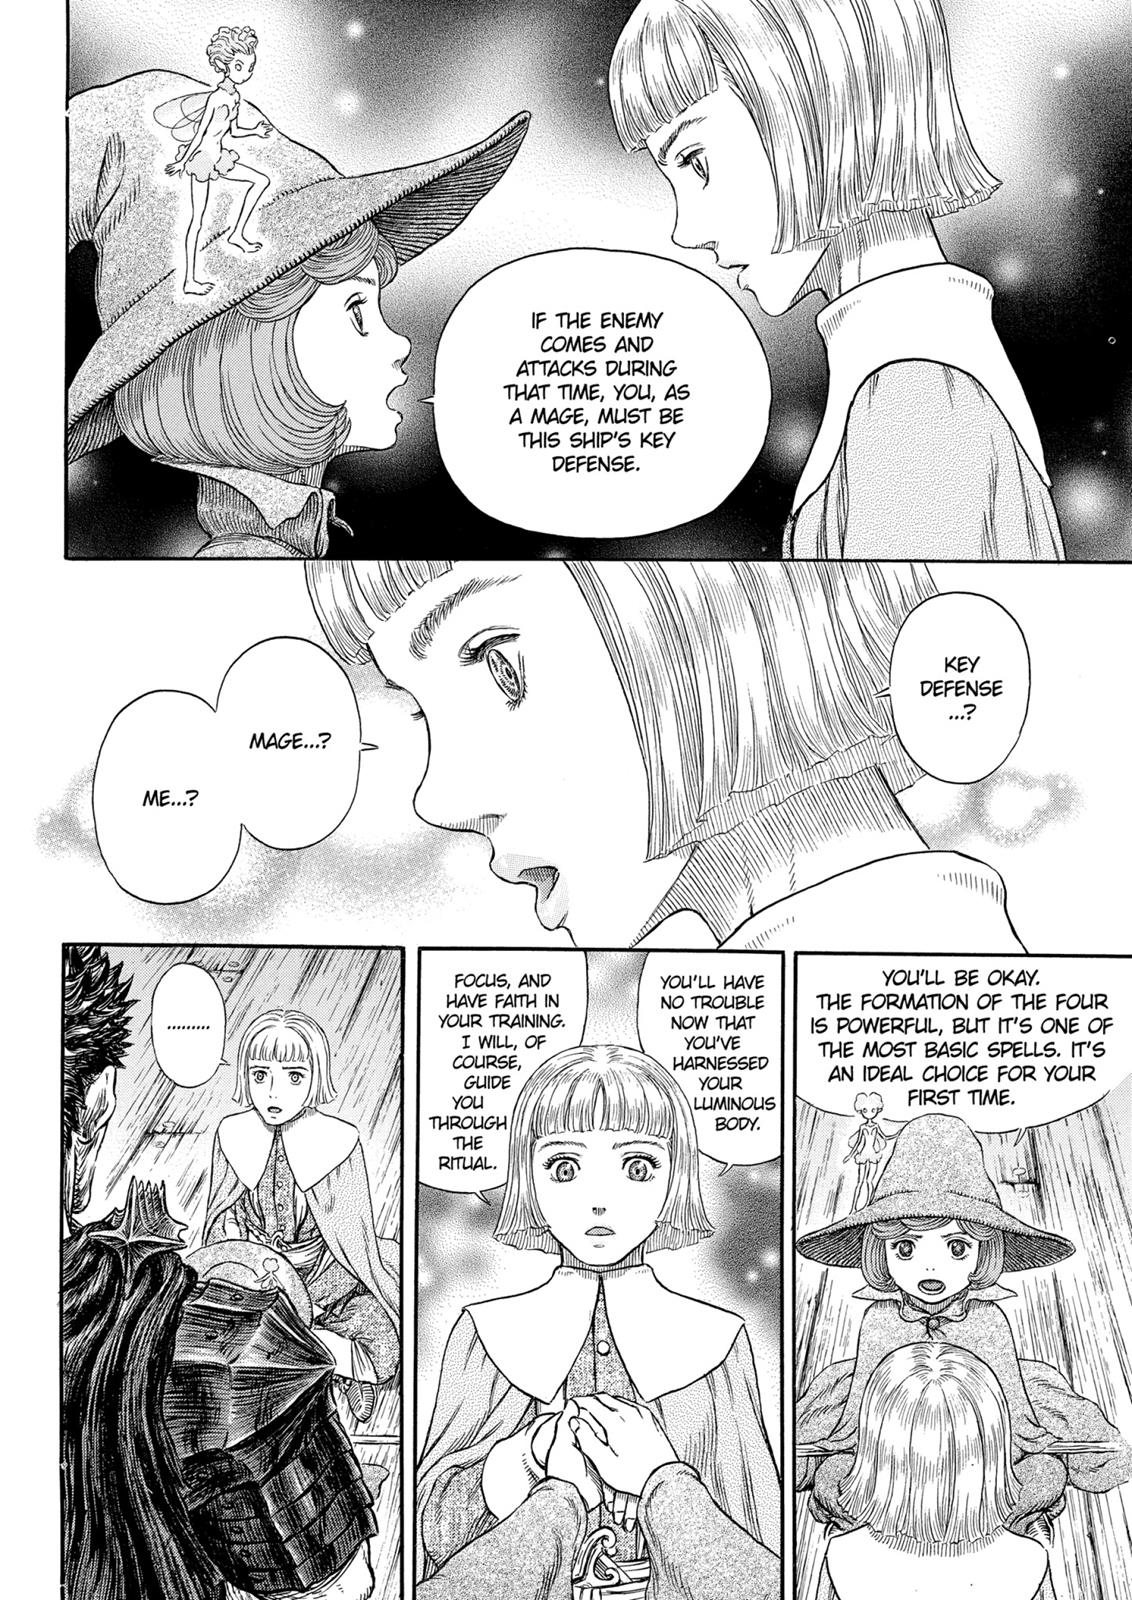 Berserk Manga Chapter 317 image 21